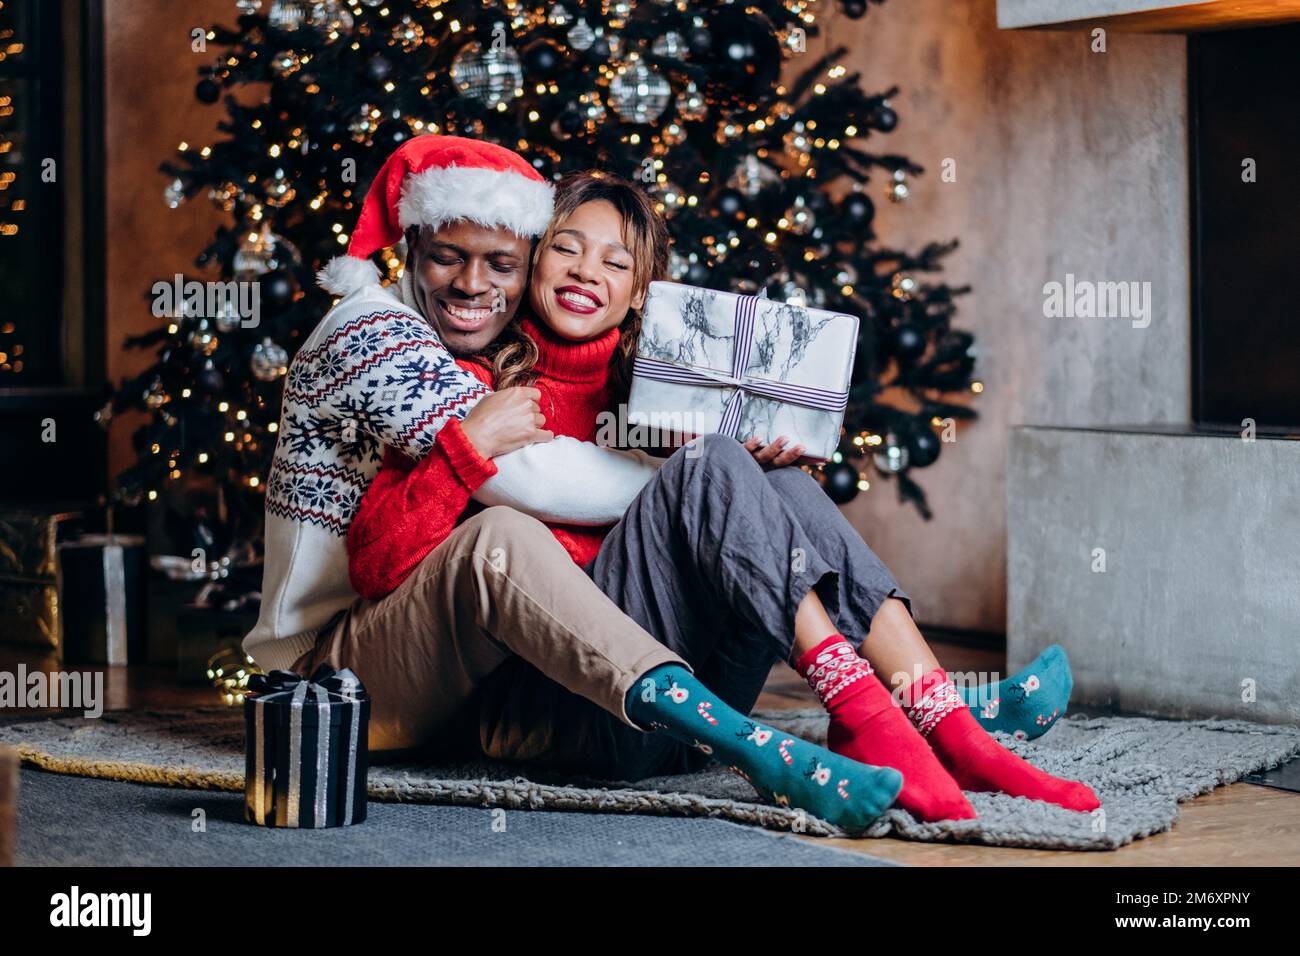 Une femme heureuse et un homme noir dans des chandails festifs enrachent des cadeaux et s'assoyent sur un tapis près de l'arbre de Noël avec des ornements et une guirlande Banque D'Images